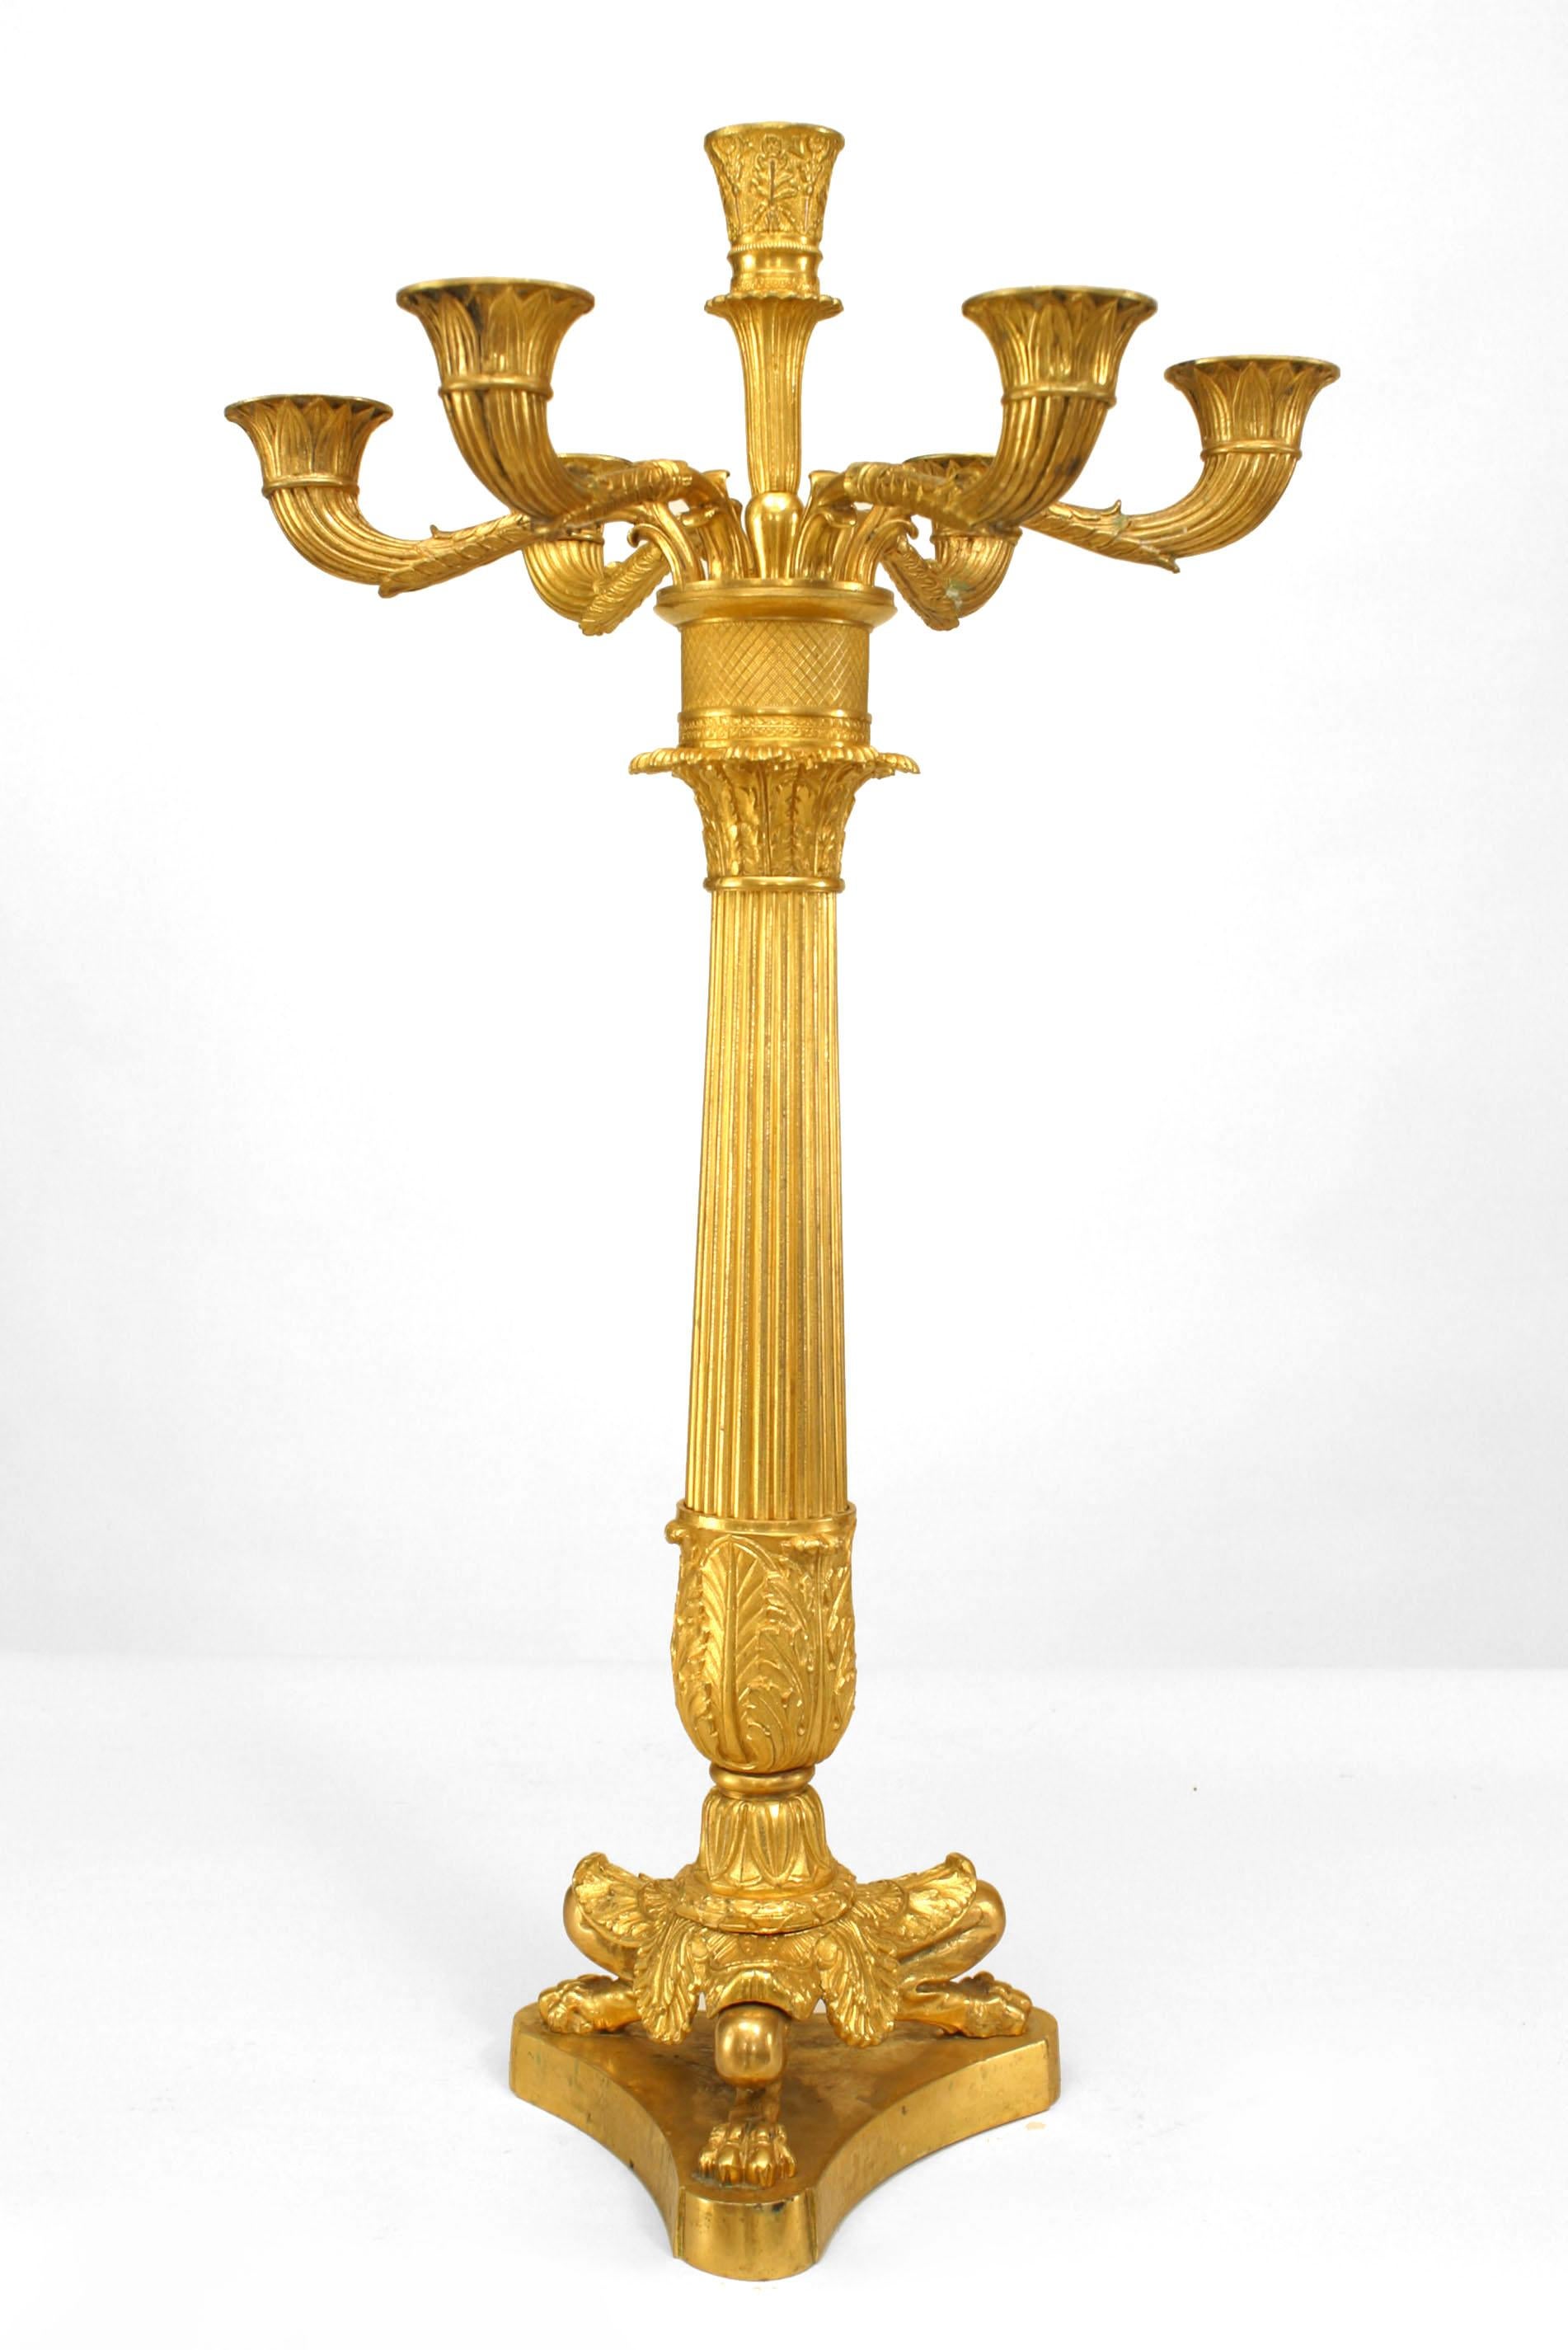 Paar französische Charles X (1. Viertel 19. Jh.) Bronze dore 7-armige Säulenkandelaber (signiert: Thomi√®re √† Paris) (PREIS ALS PÄRCHEN)
